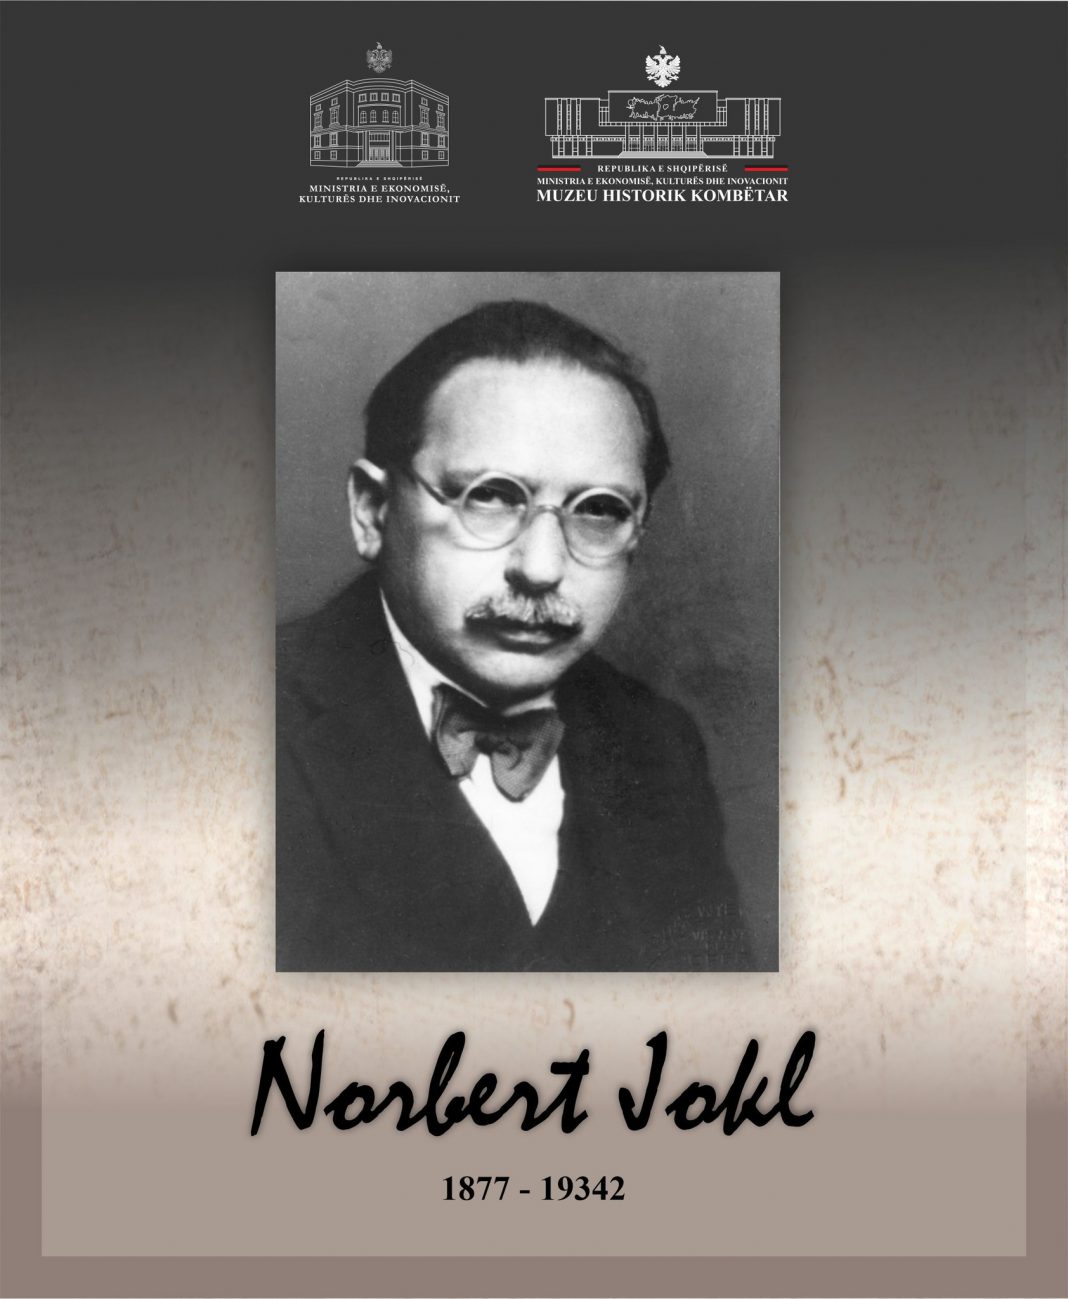 Përkujtohet Norbert Jokl, një ndër themeluesit e albanologjisë